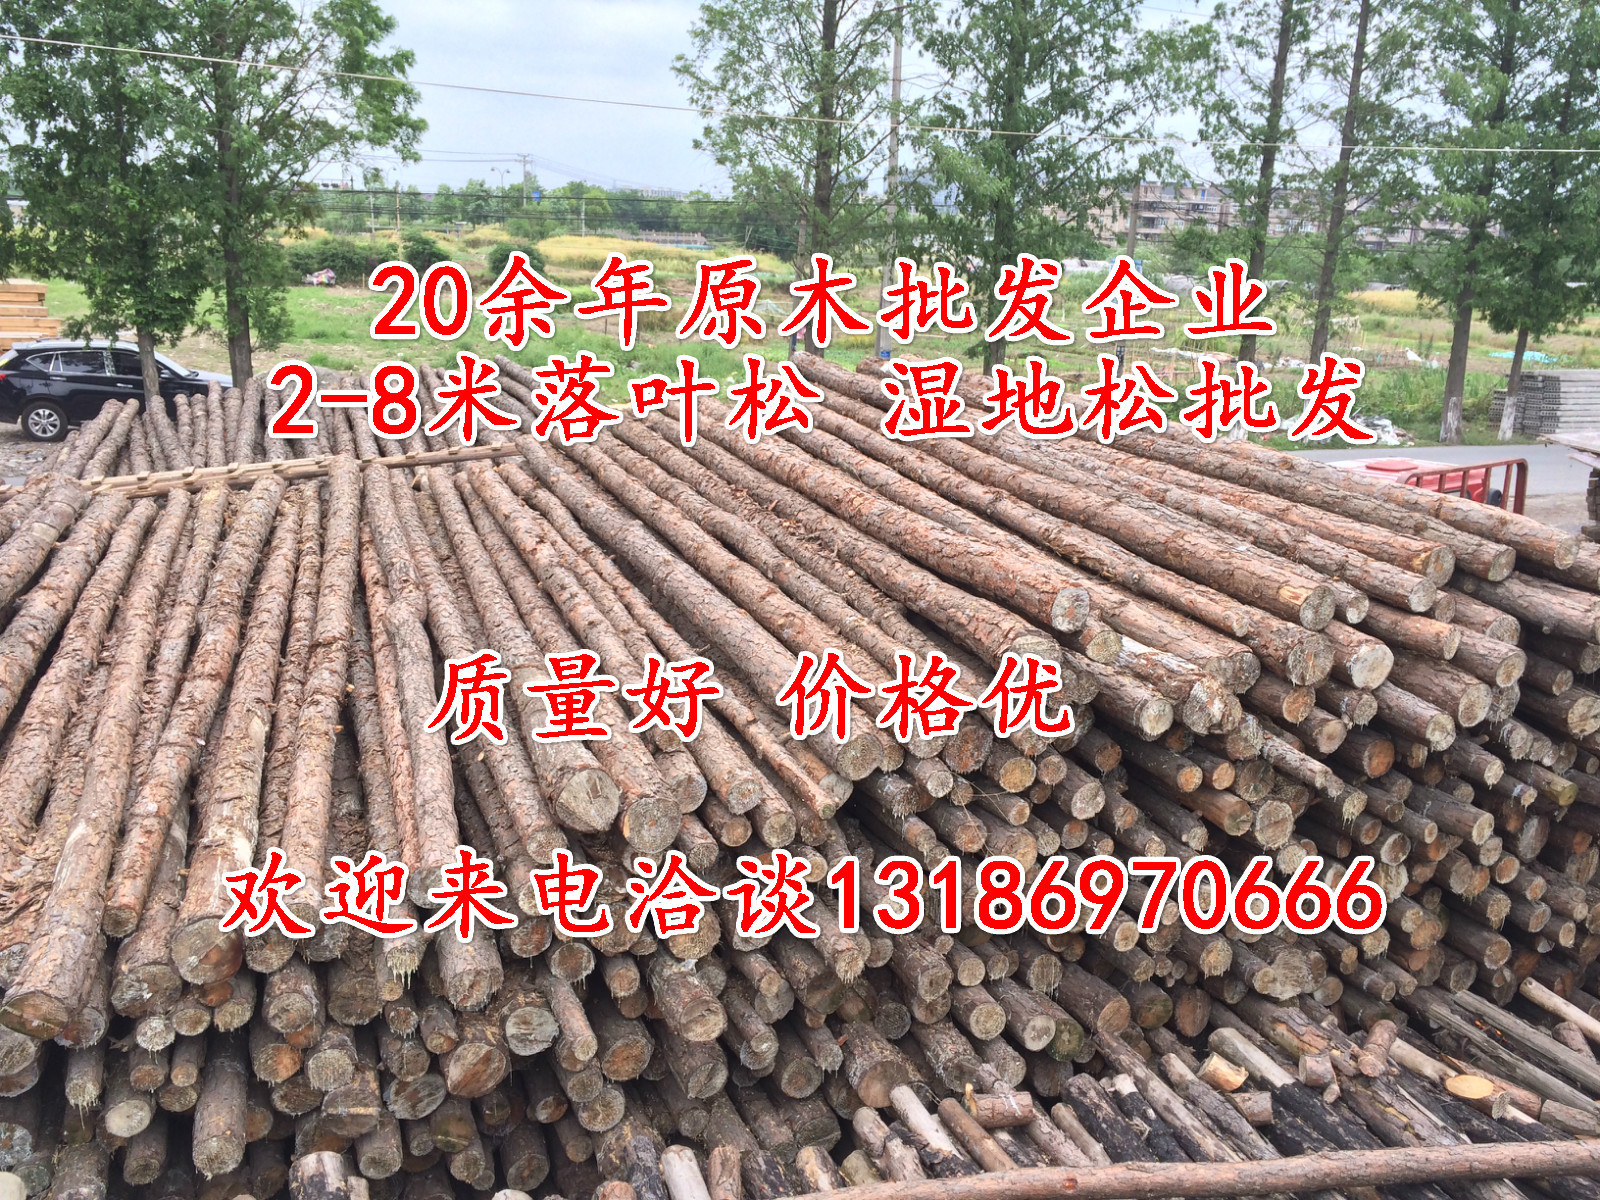 【松木桩 全国发货】专业供应打桩松木桩 全国直发新鲜原木